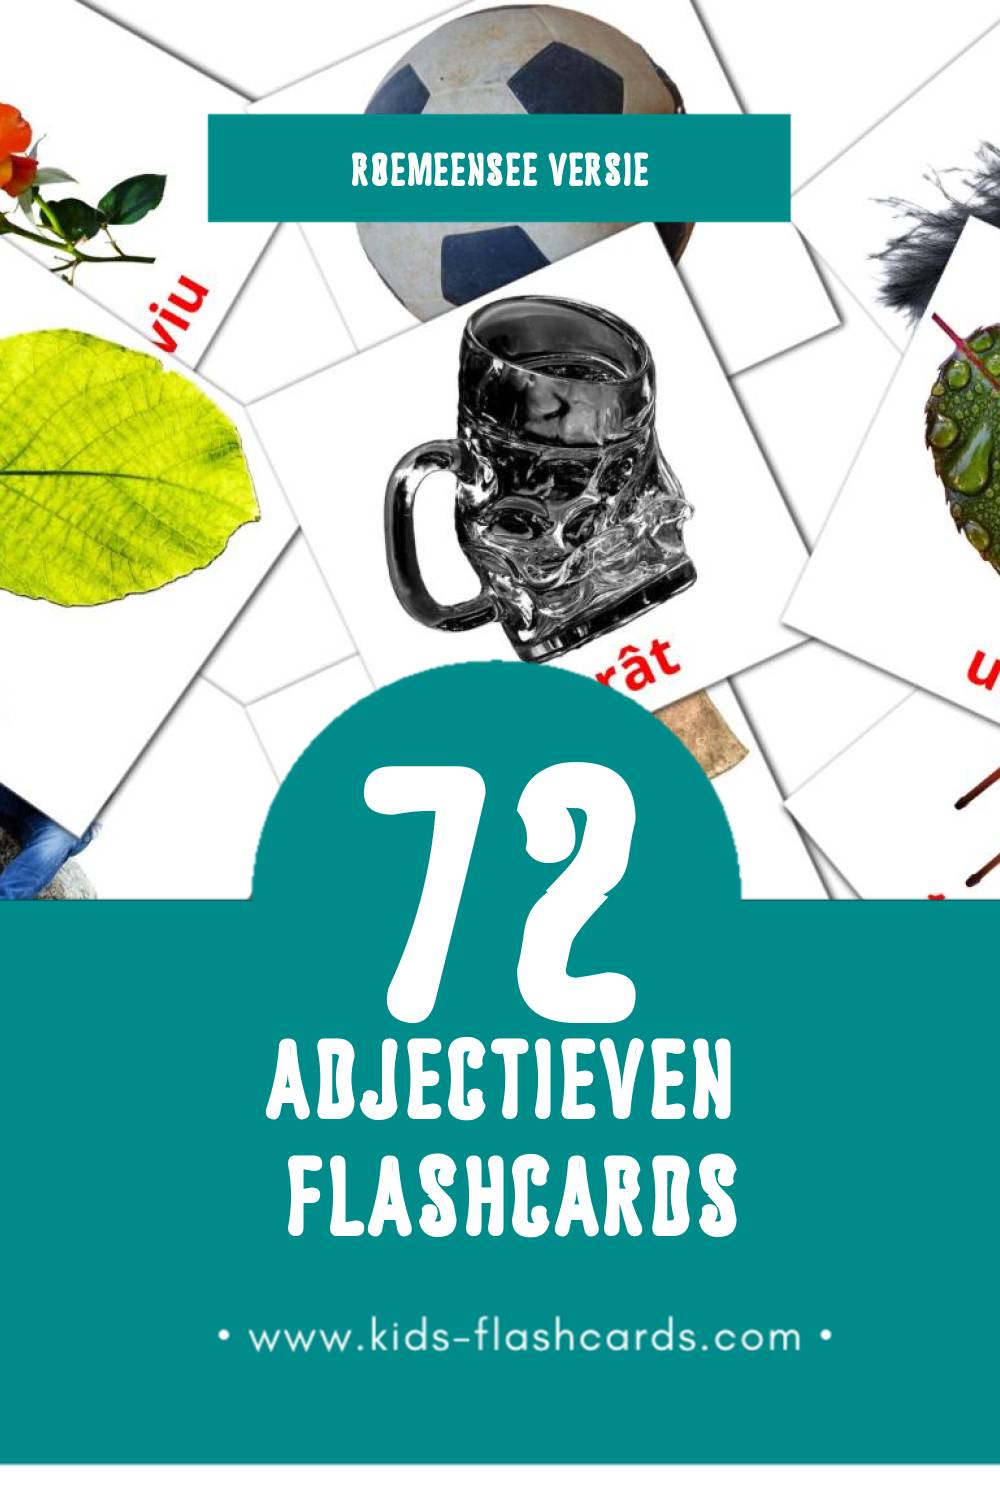 Visuele Adjective  Flashcards voor Kleuters (72 kaarten in het Roemeense)